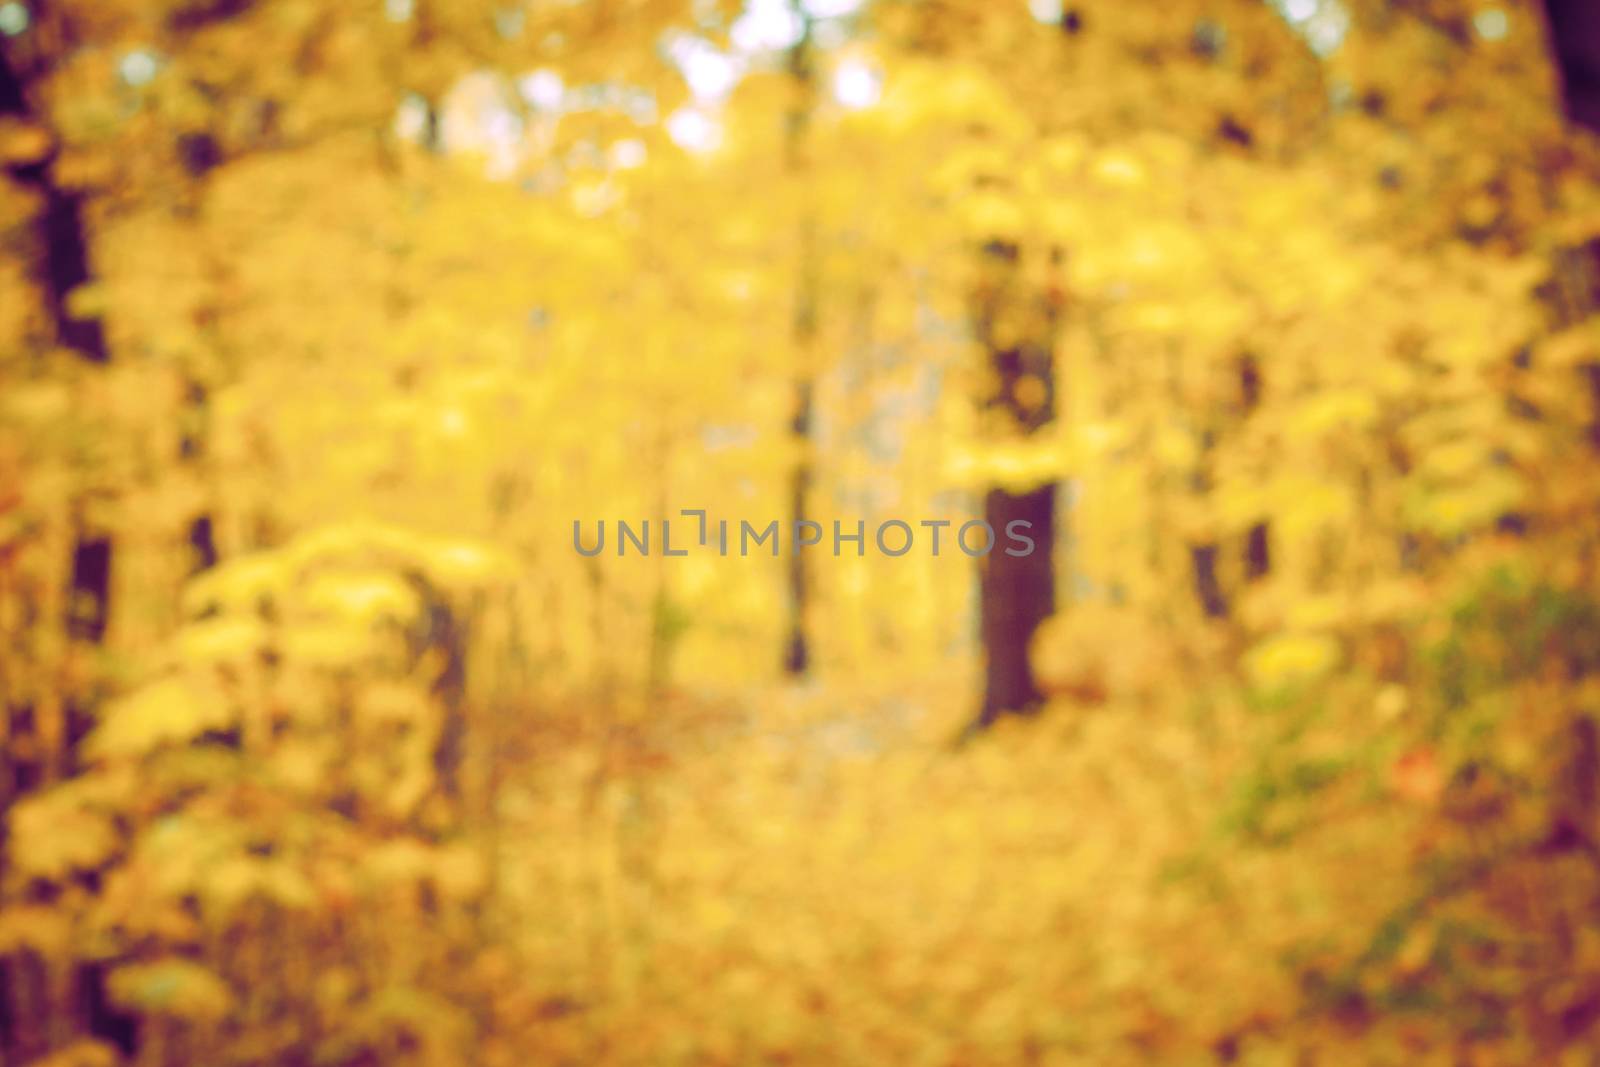 Autumn forest blurred background